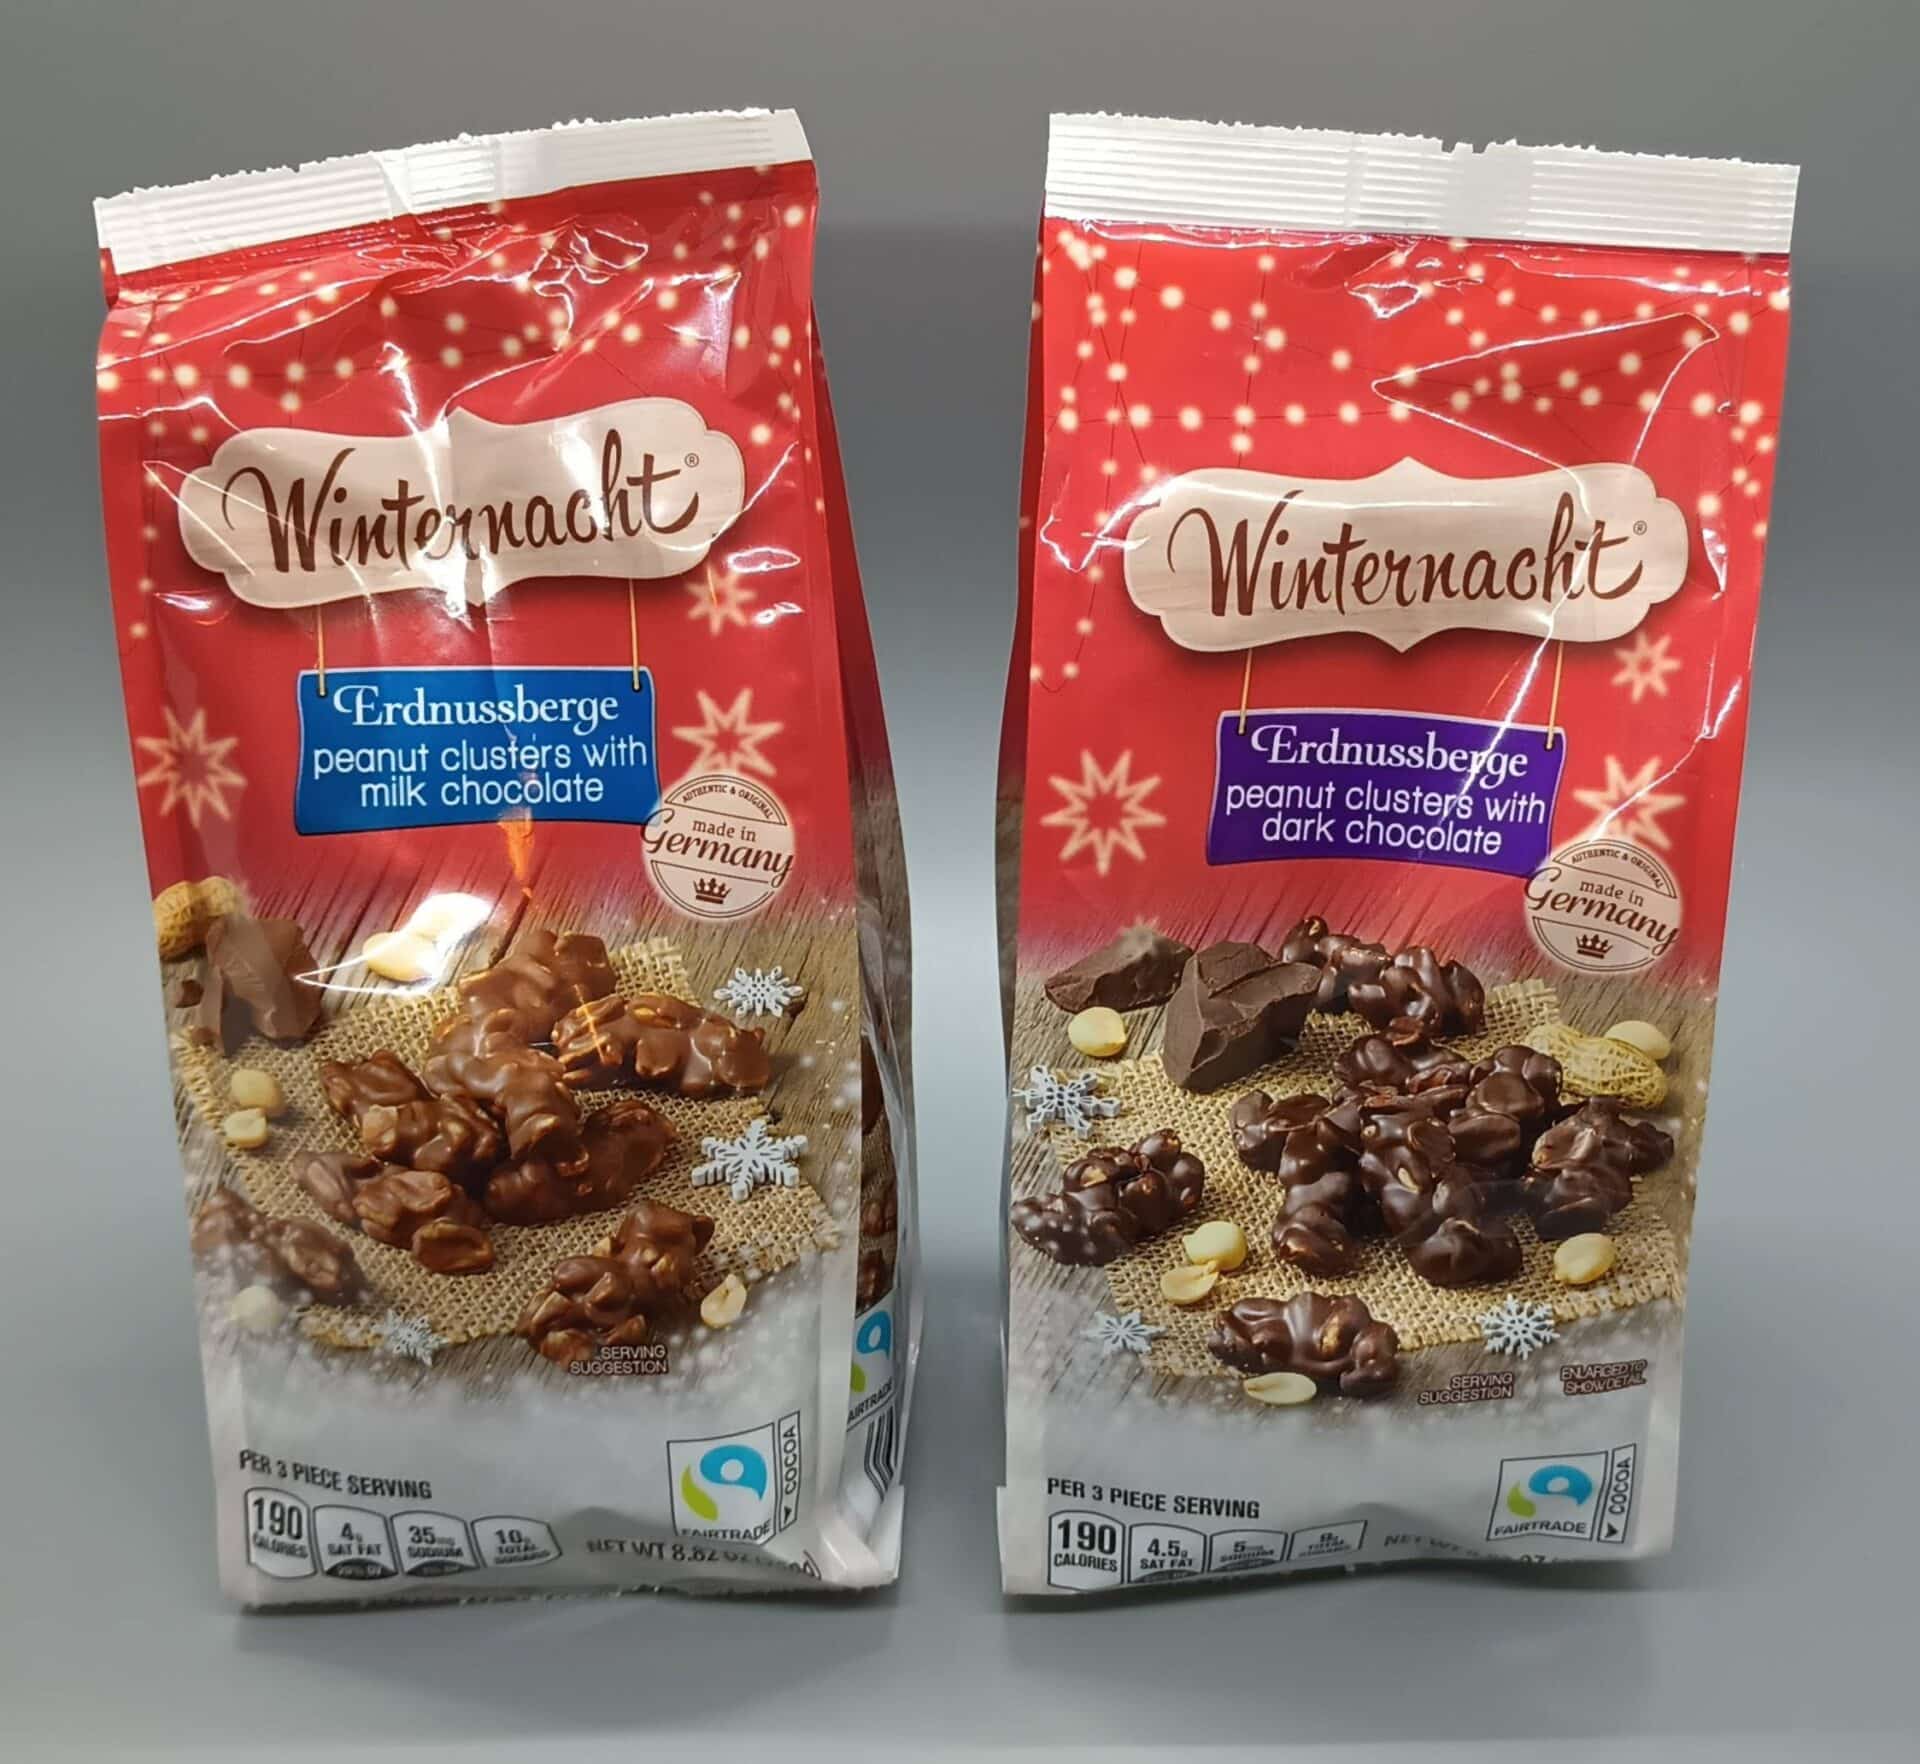 Winternact Erdnussberge Peanut Clusters with Milk or Dark Chocolate